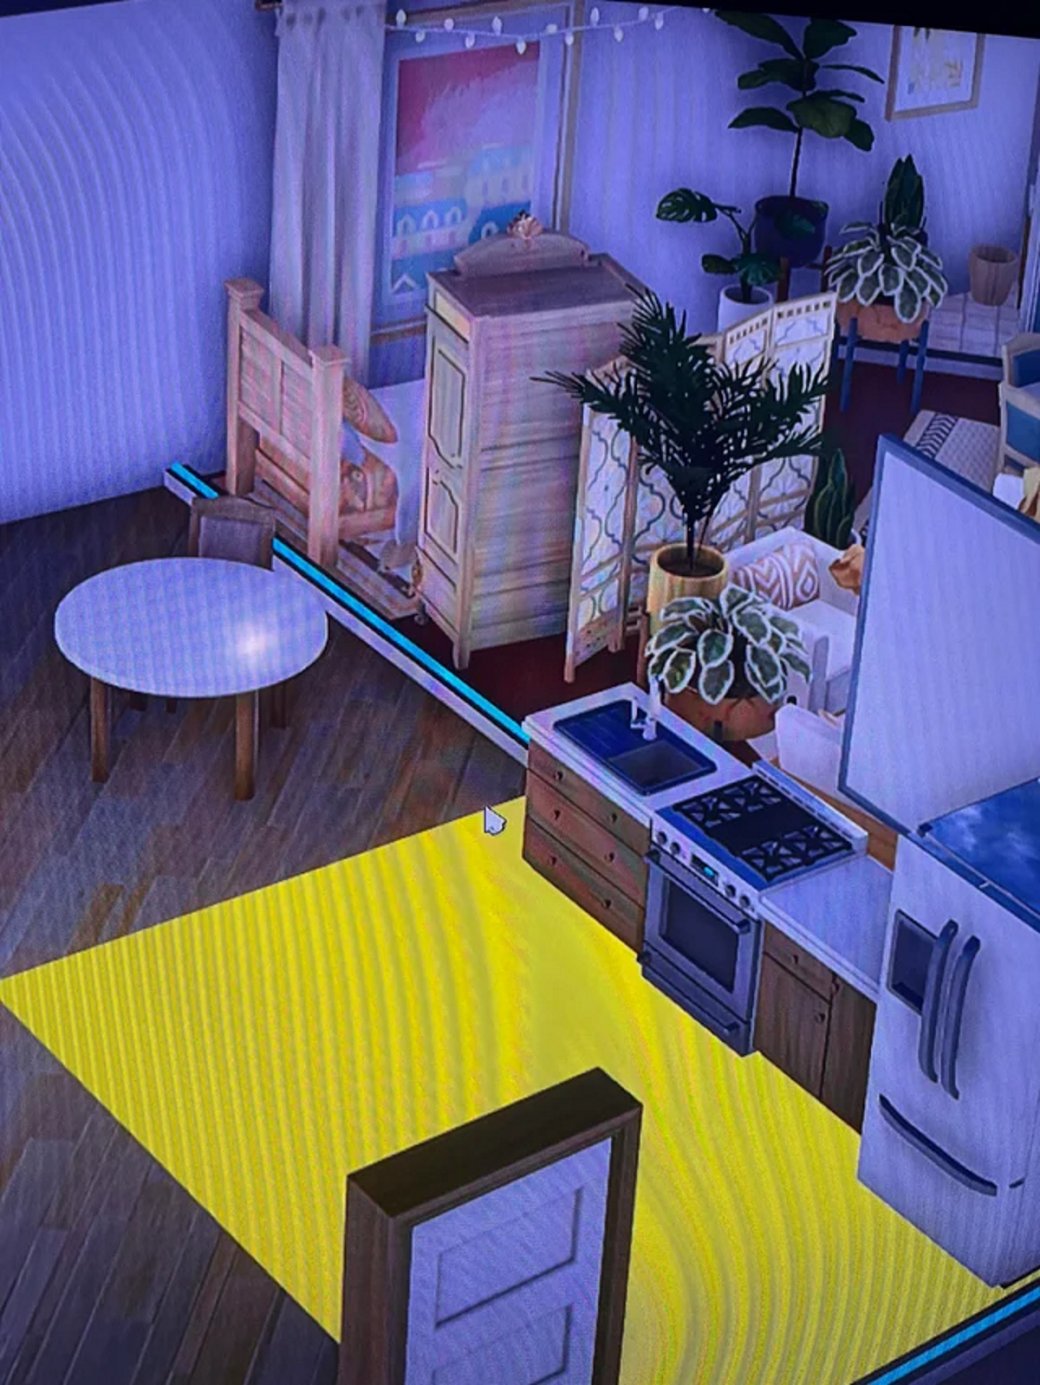 Галерея Появились слитые изображения пре-альфа версии The Sims 5 с видом игрового городка - 11 фото